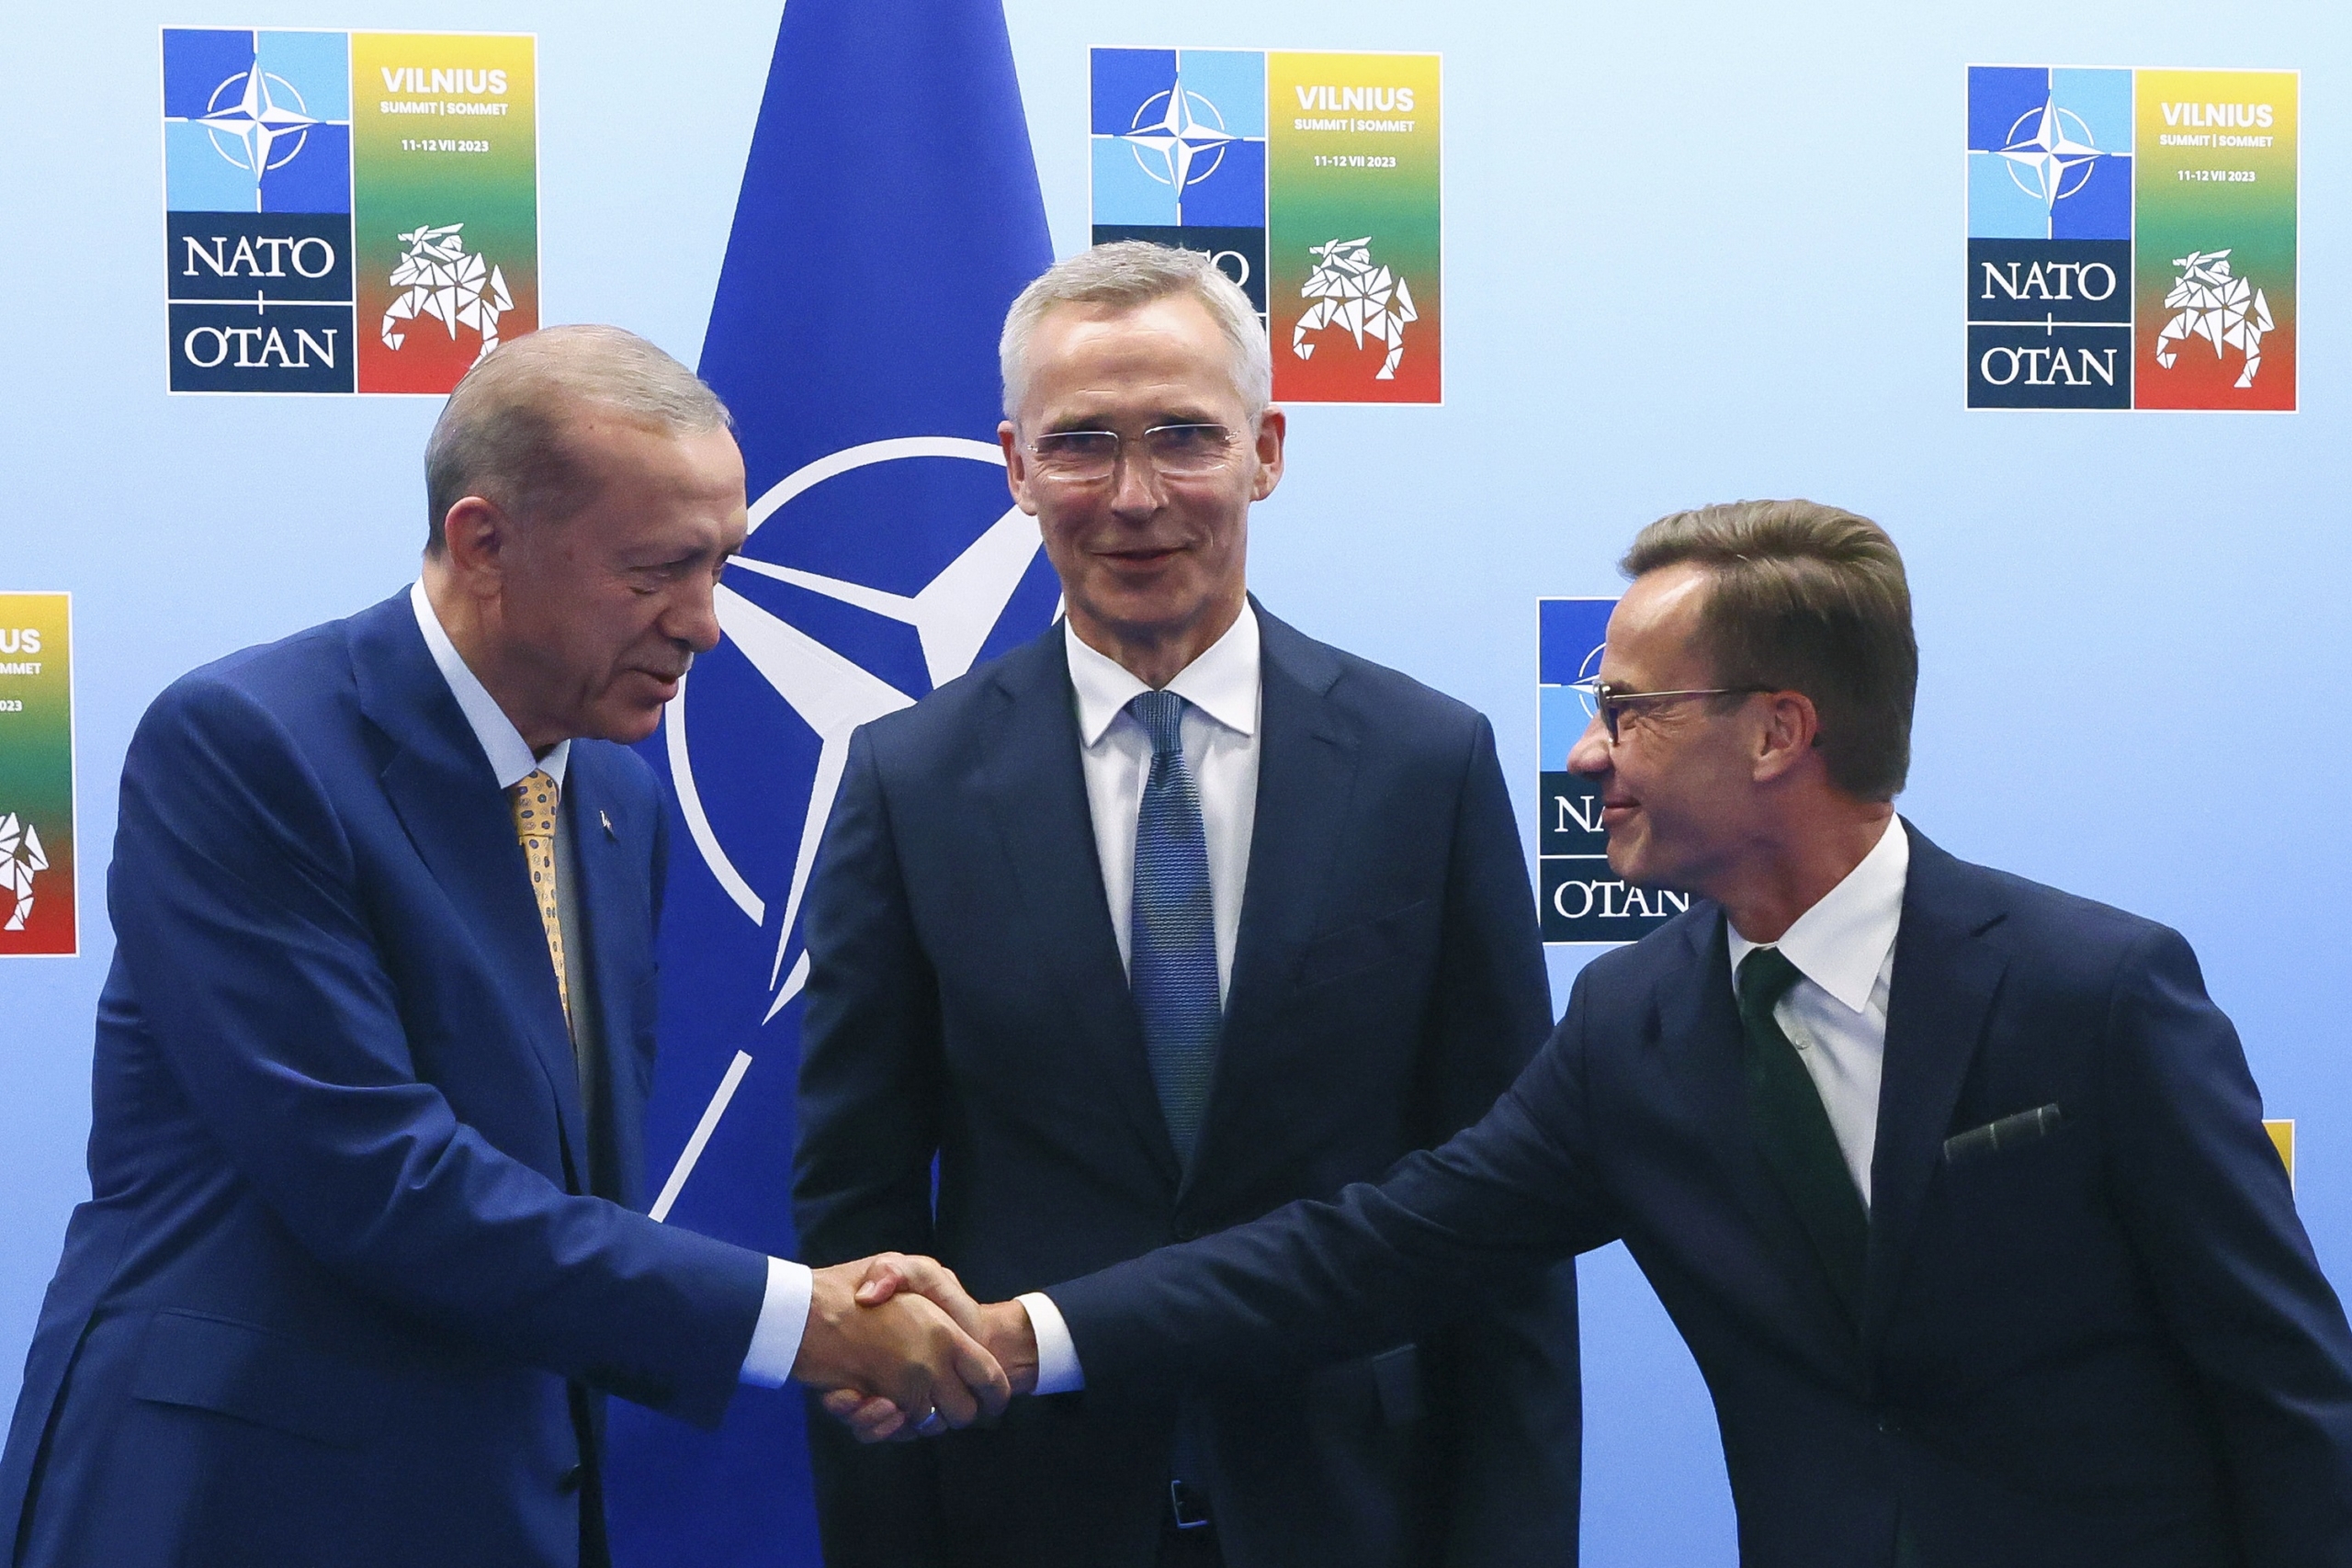 Thụy Điển tiến một bước gần hơn đến tư cách thành viên NATO sau khi ủy ban Quốc hội Thổ Nhĩ Kỳ phê chuẩn